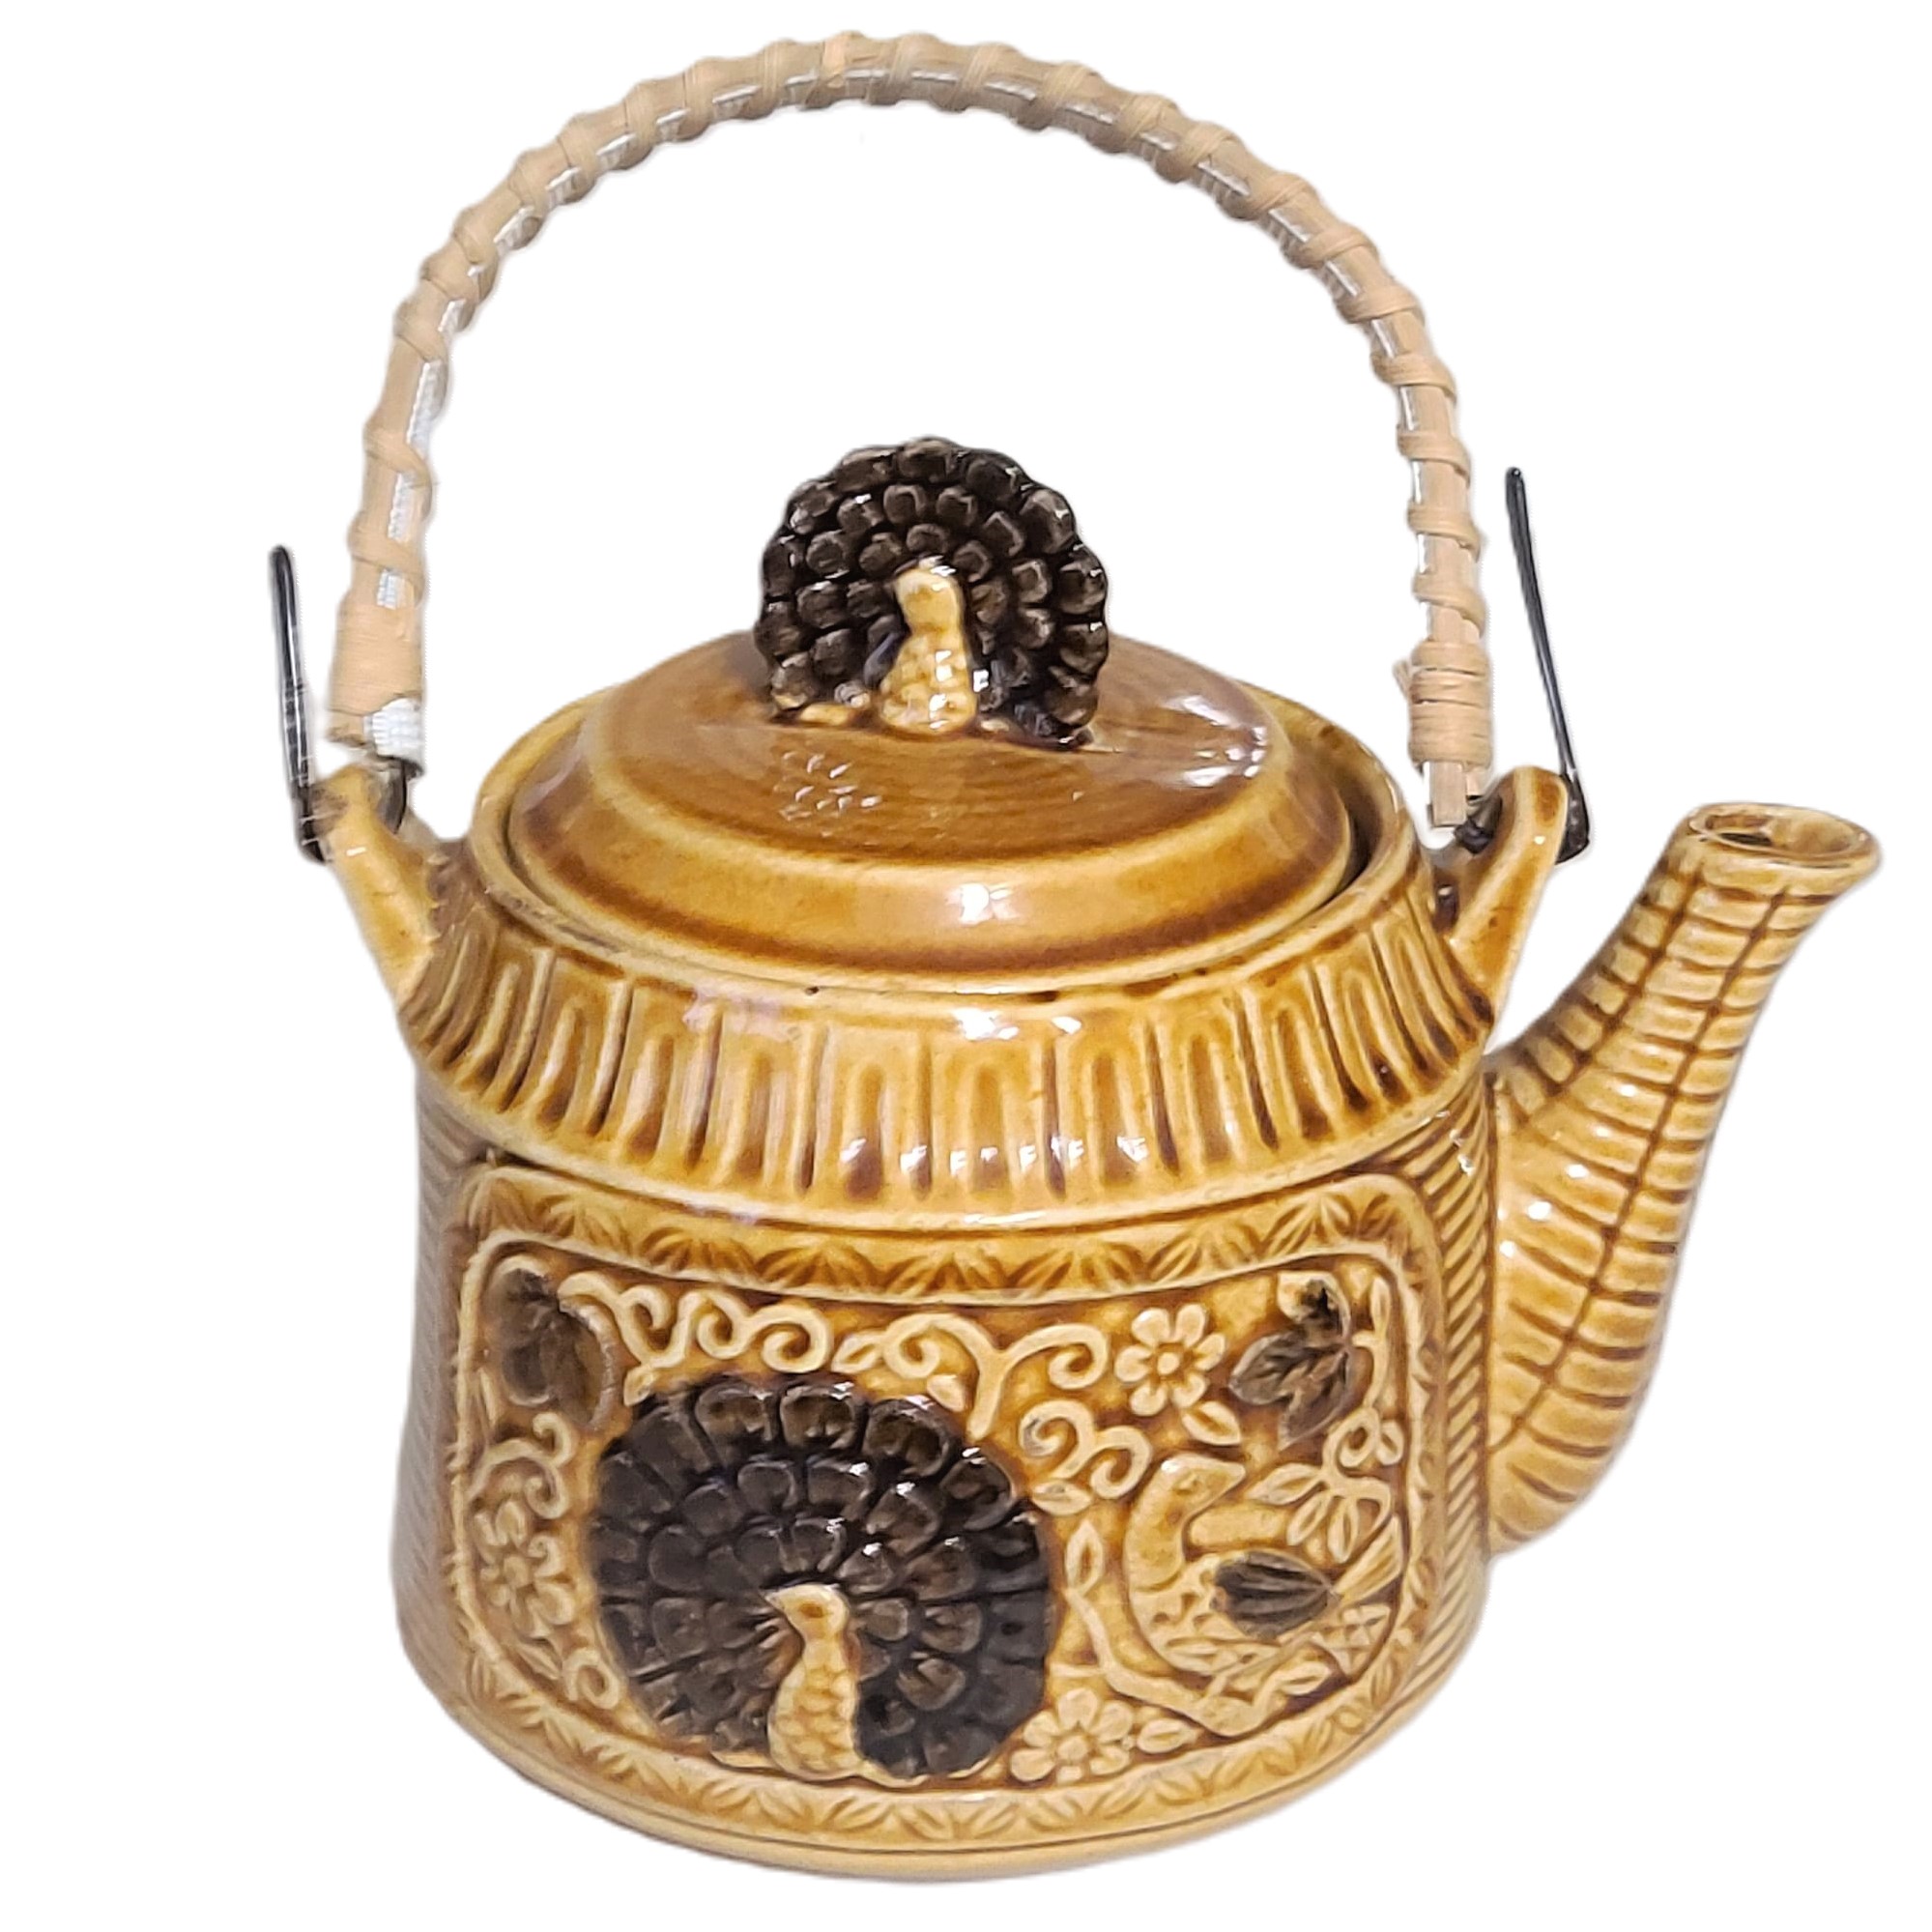 Turkey and Quail Festive Ceramaic Tea Pot 1970's - Click Image to Close